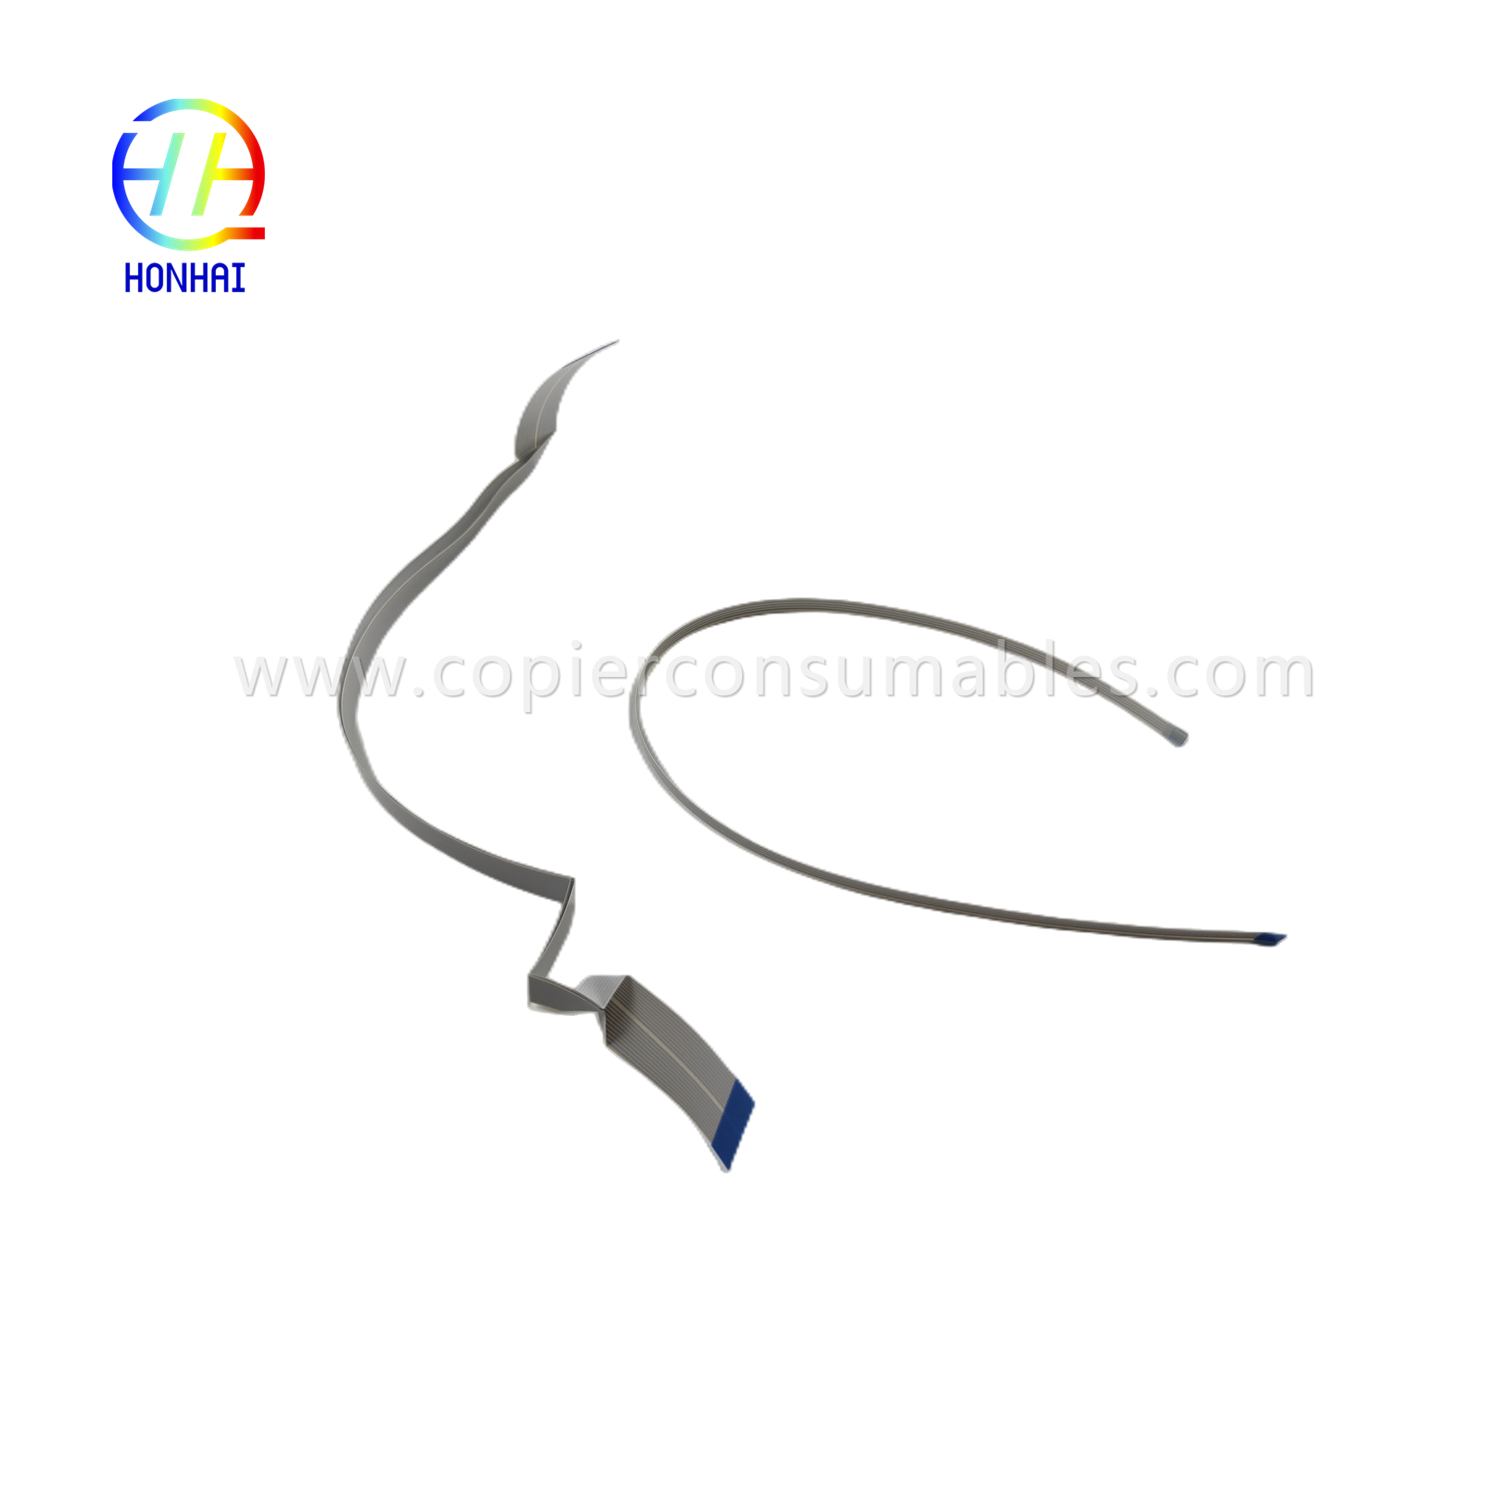 Tsab ntawv xov xwm no tshwm sim thawj zaug https://c585.goodao.net/flex-cable-for-epson-l1110-l3110-l3210-l3150-l3250-l5190-l5290-head-cable-product/